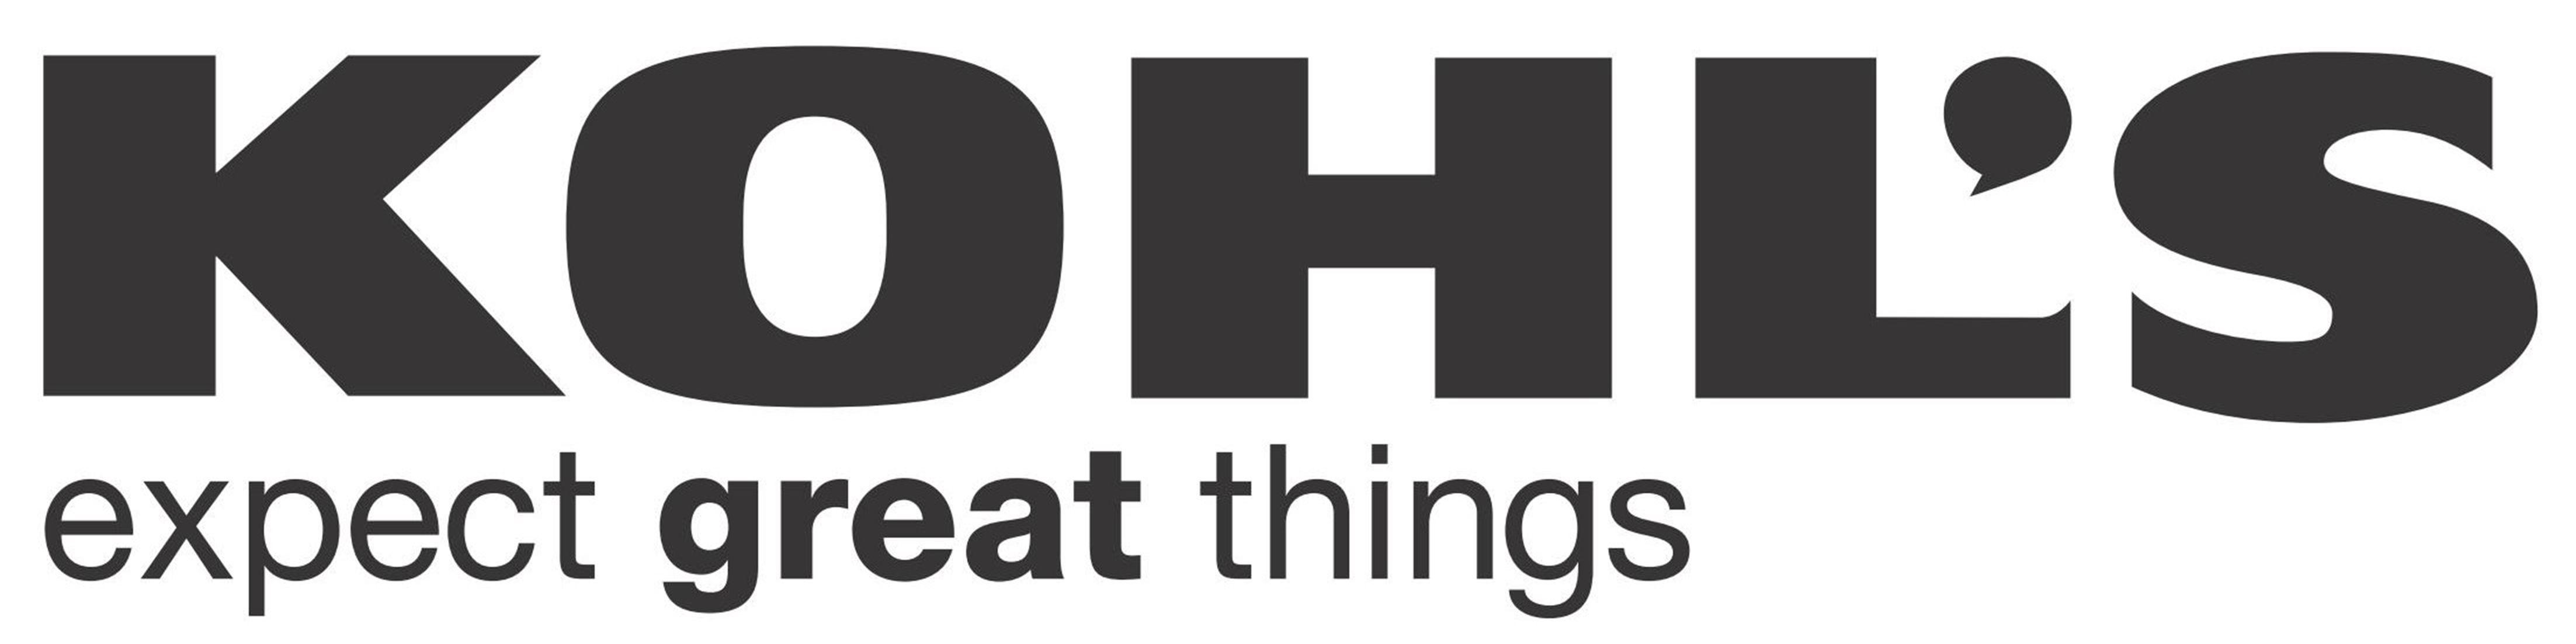 Kohl's Logo - kohls-logo - Sharpr